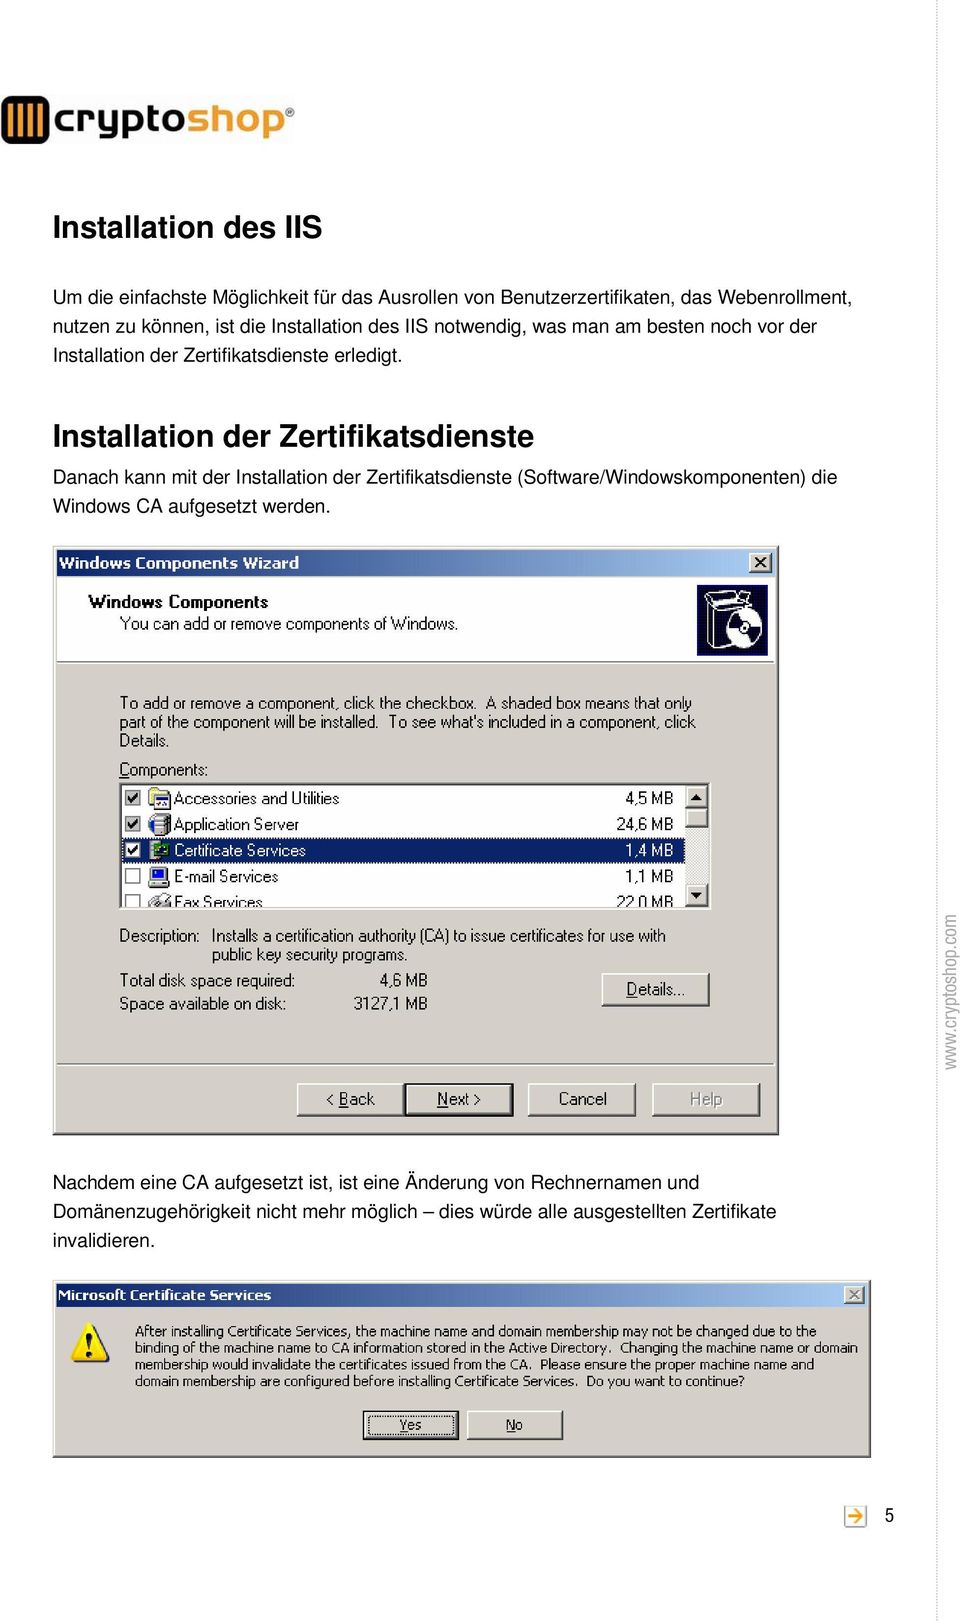 Installation der Zertifikatsdienste Danach kann mit der Installation der Zertifikatsdienste (Software/Windowskomponenten) die Windows CA